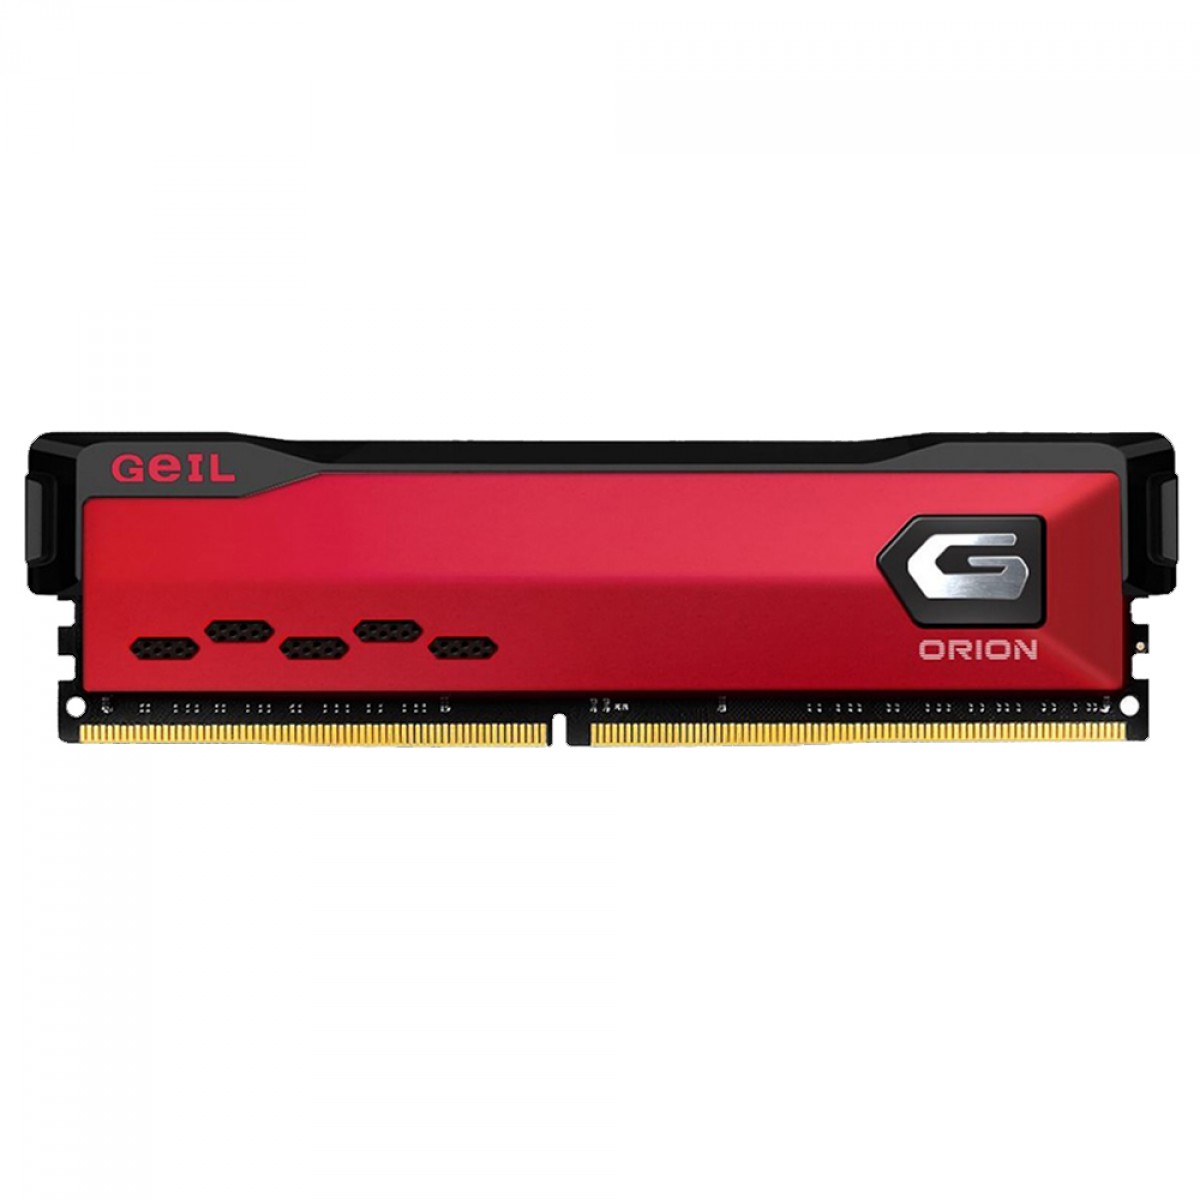 Memória DDR4 Geil Orion, 16GB 3000MHz, Red, GAOR416GB3000C16ASC